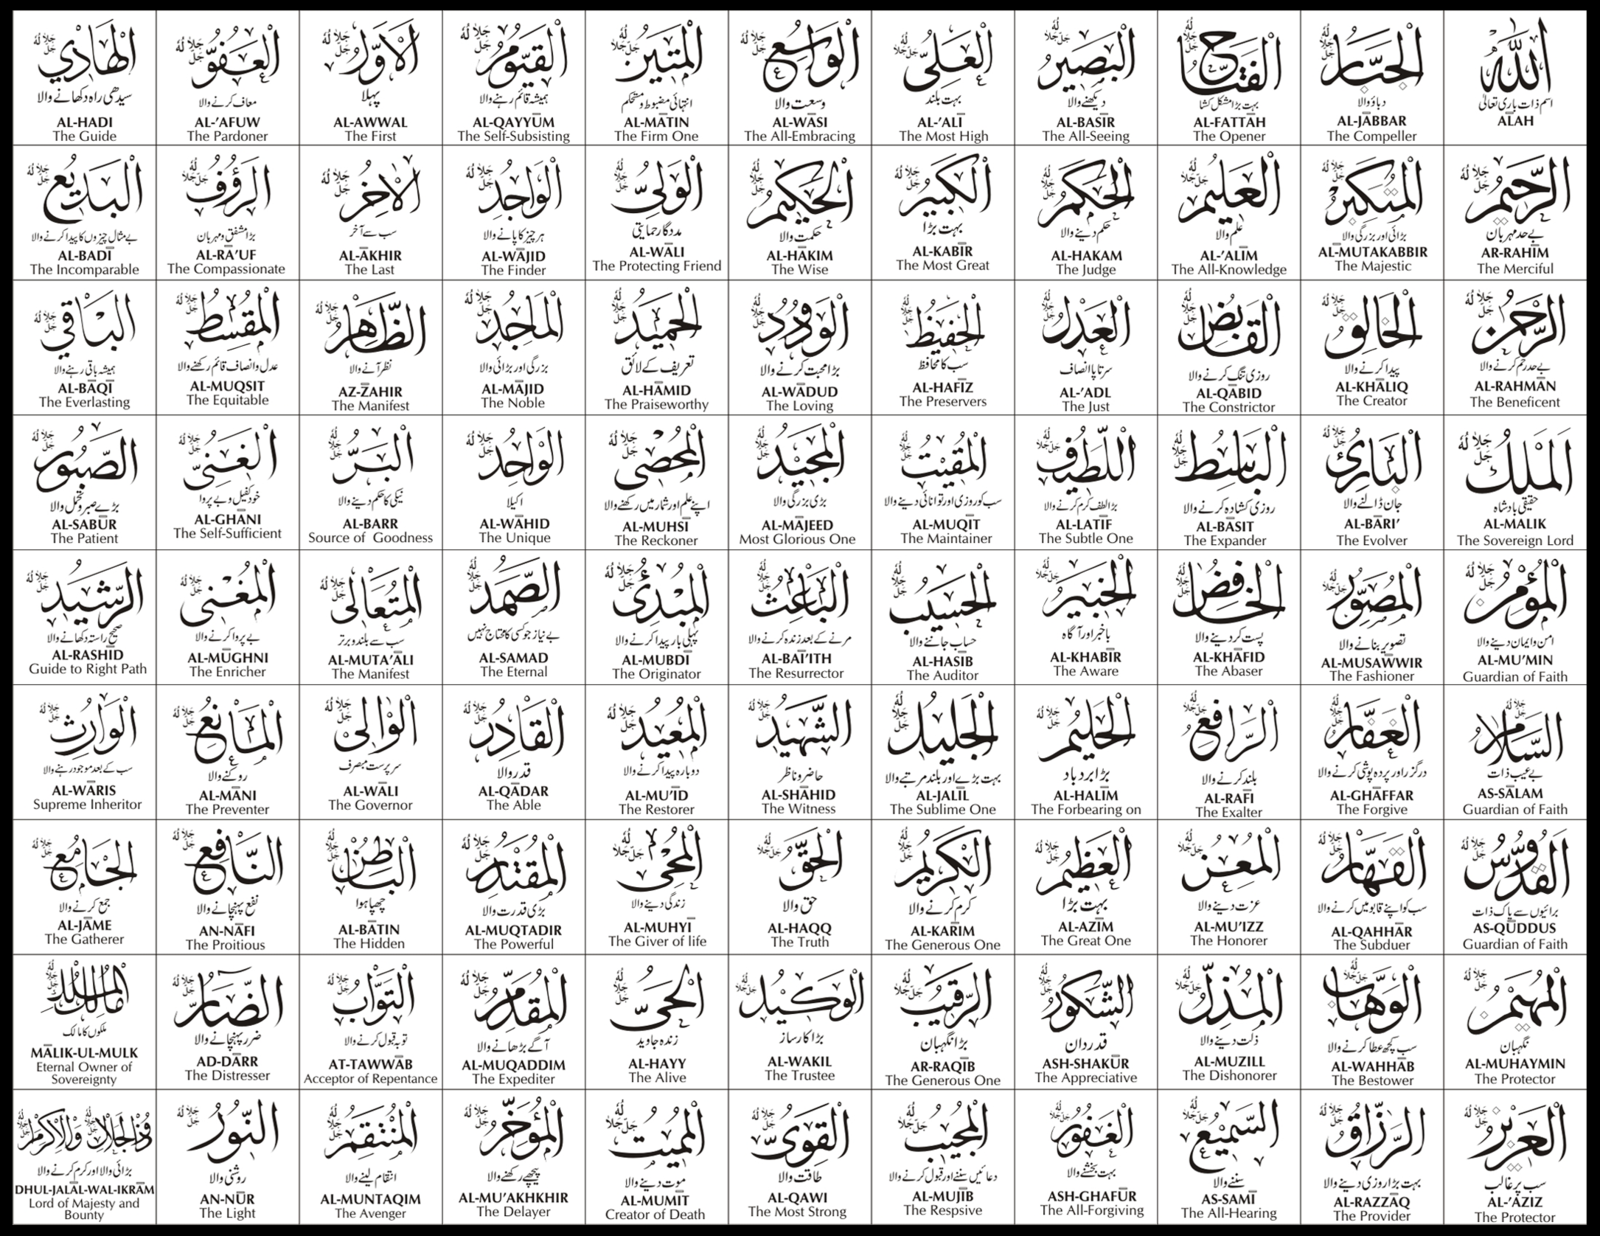 Suprabhatham Daily: Asmaul Husna "99 Names of Allah"